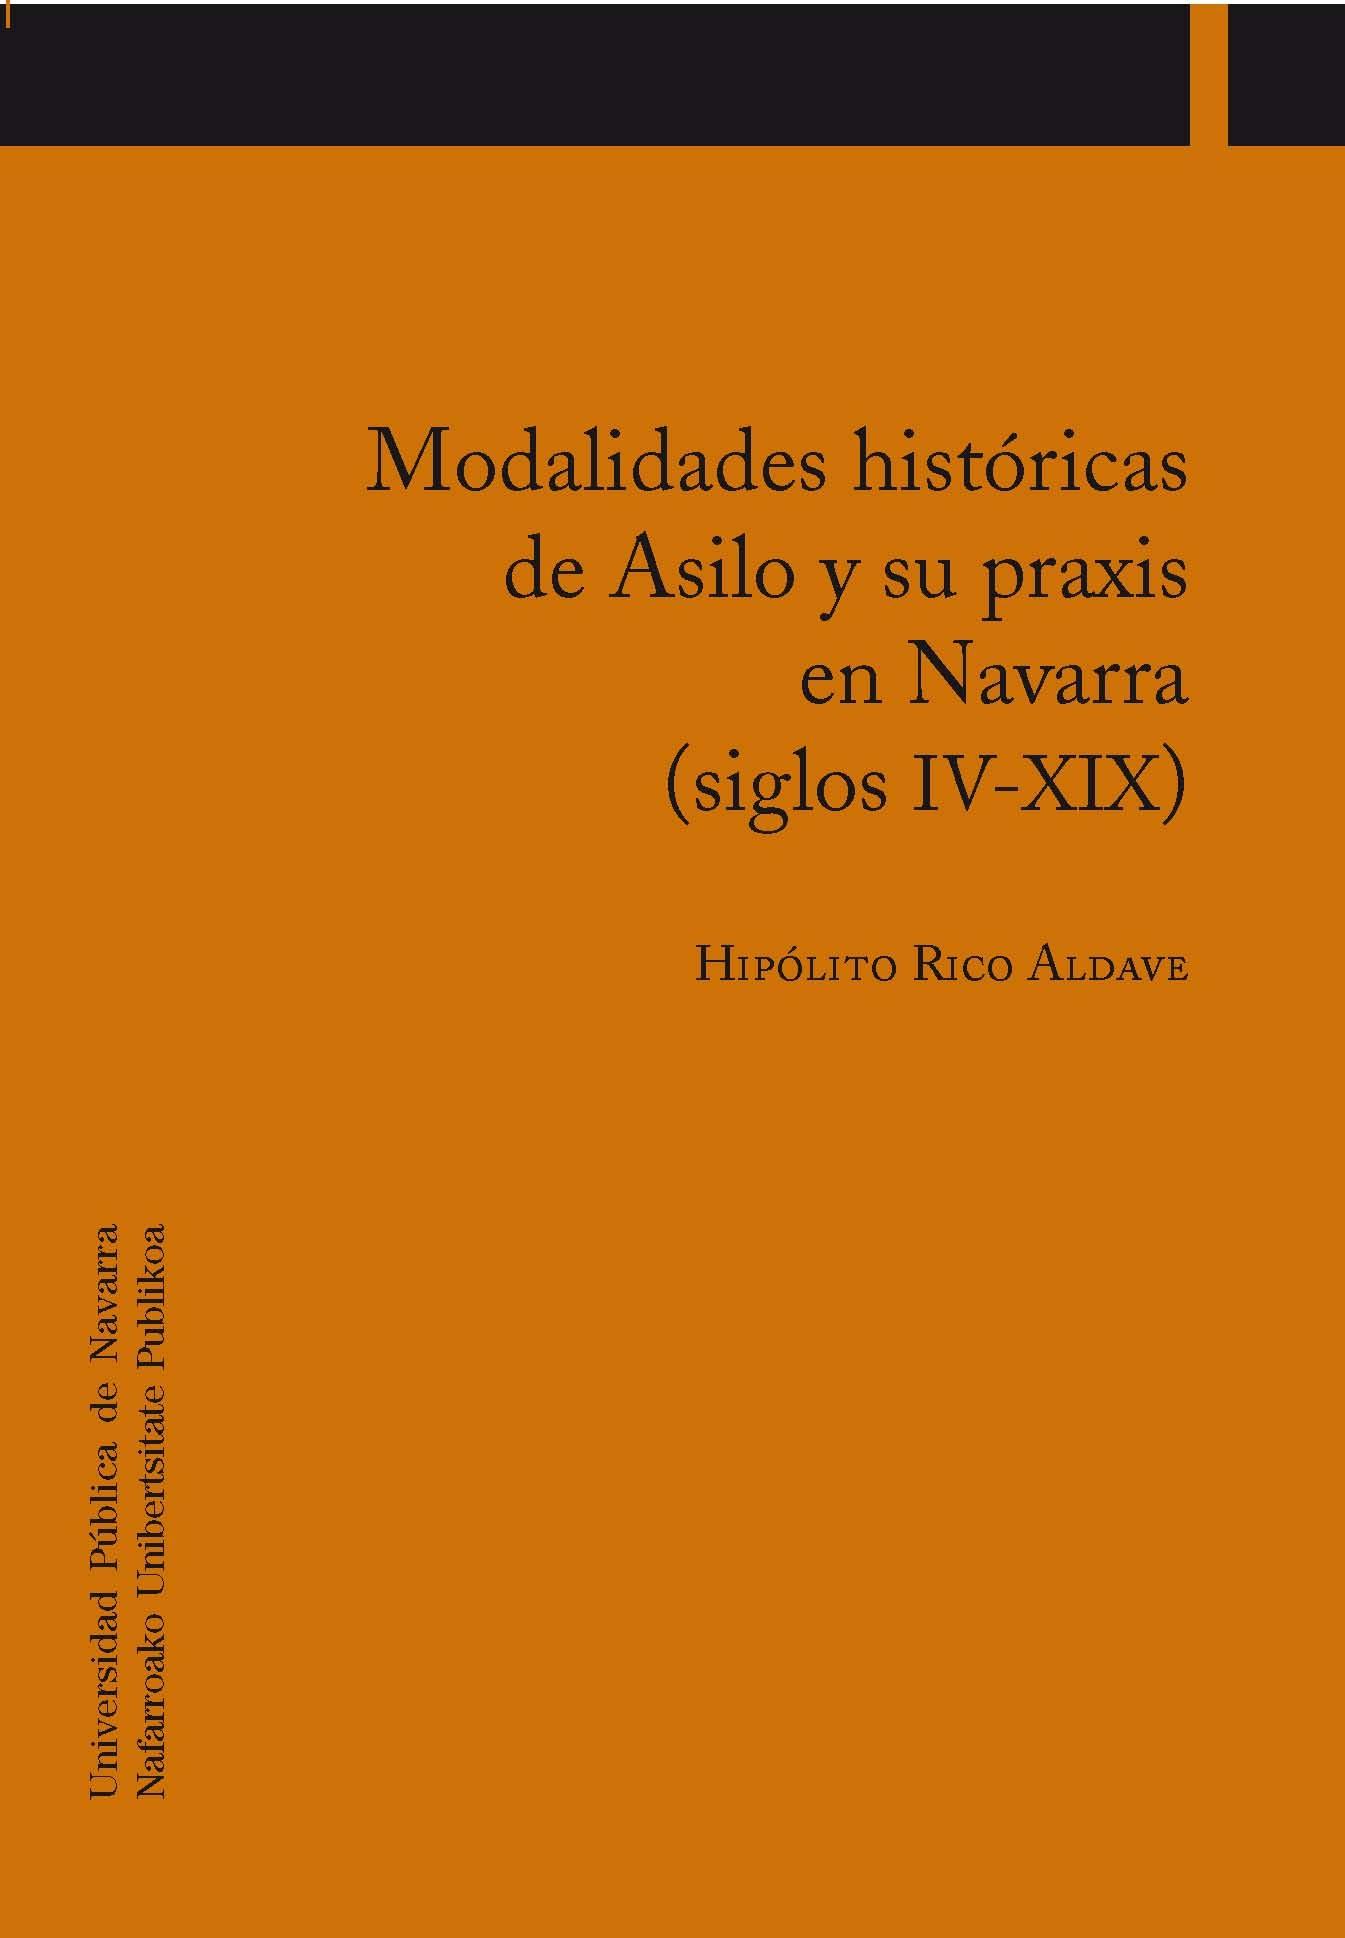 Modalidades históricas de Asilo y su praxis en Navarra (siglos IV-XIX) "SIGLOS IV-XIX". 